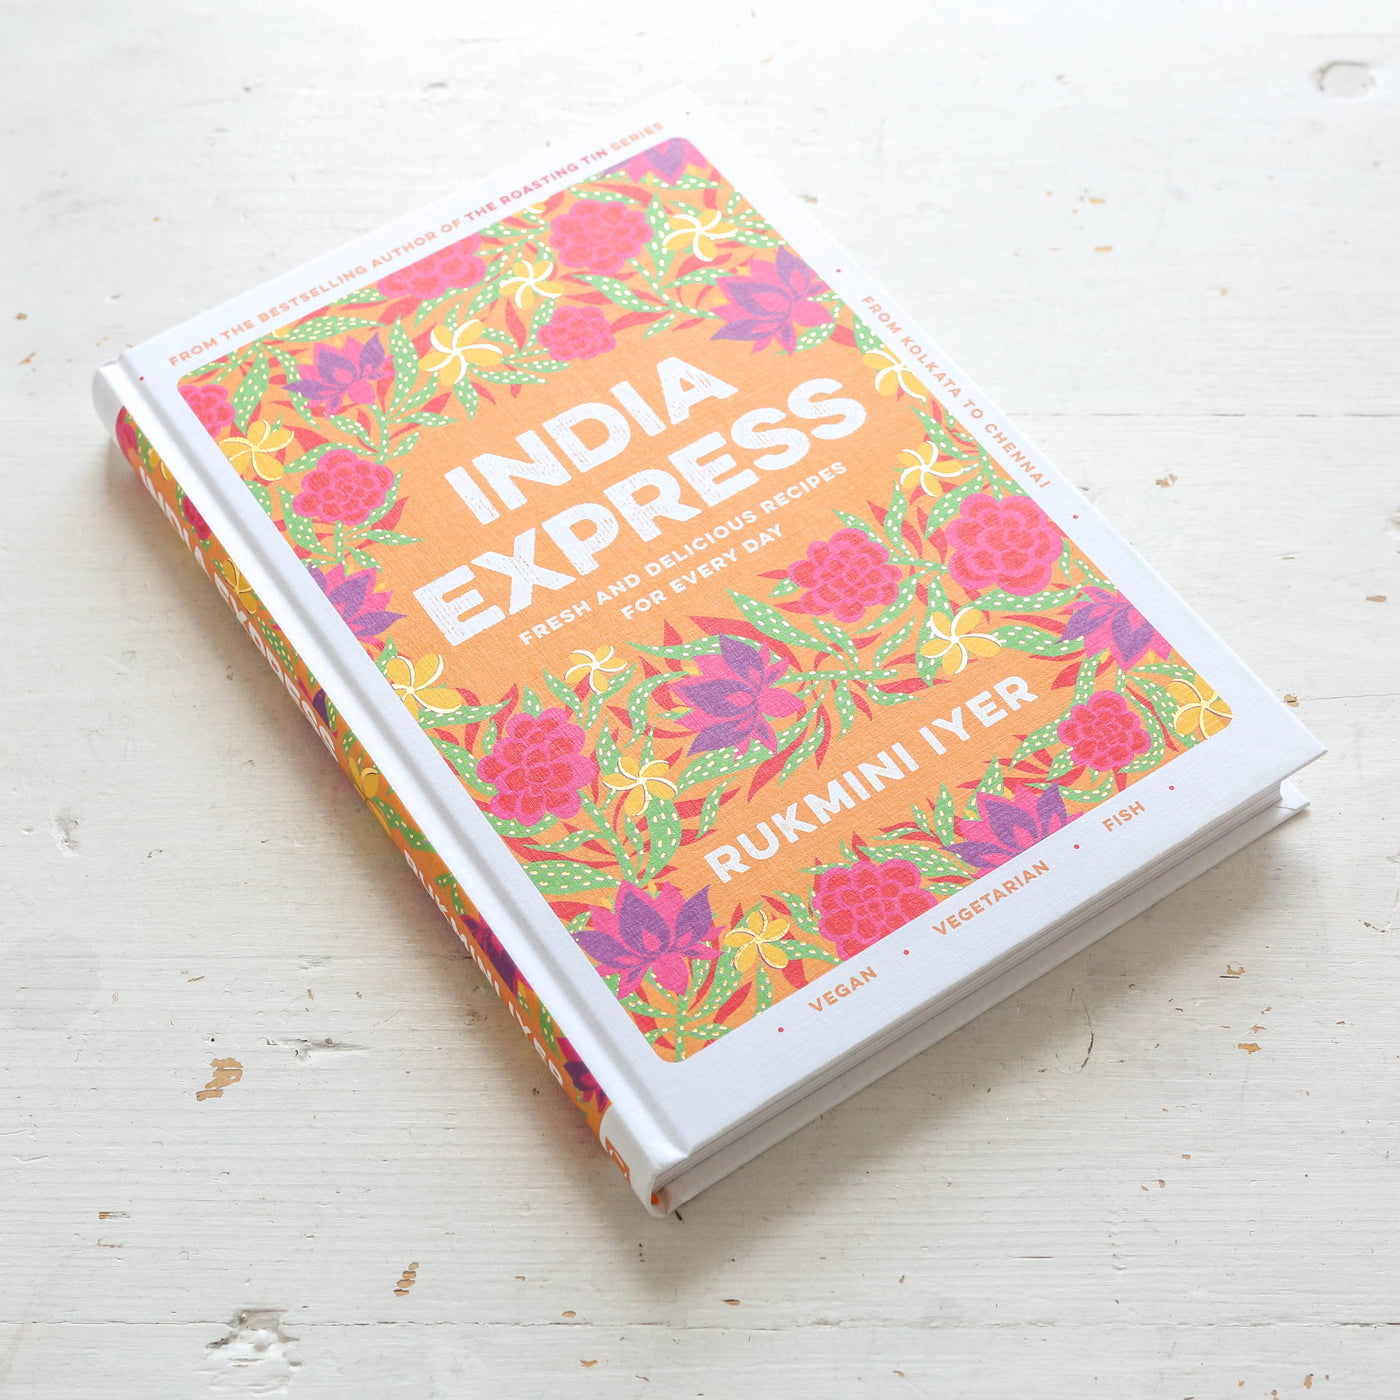 India Express Book